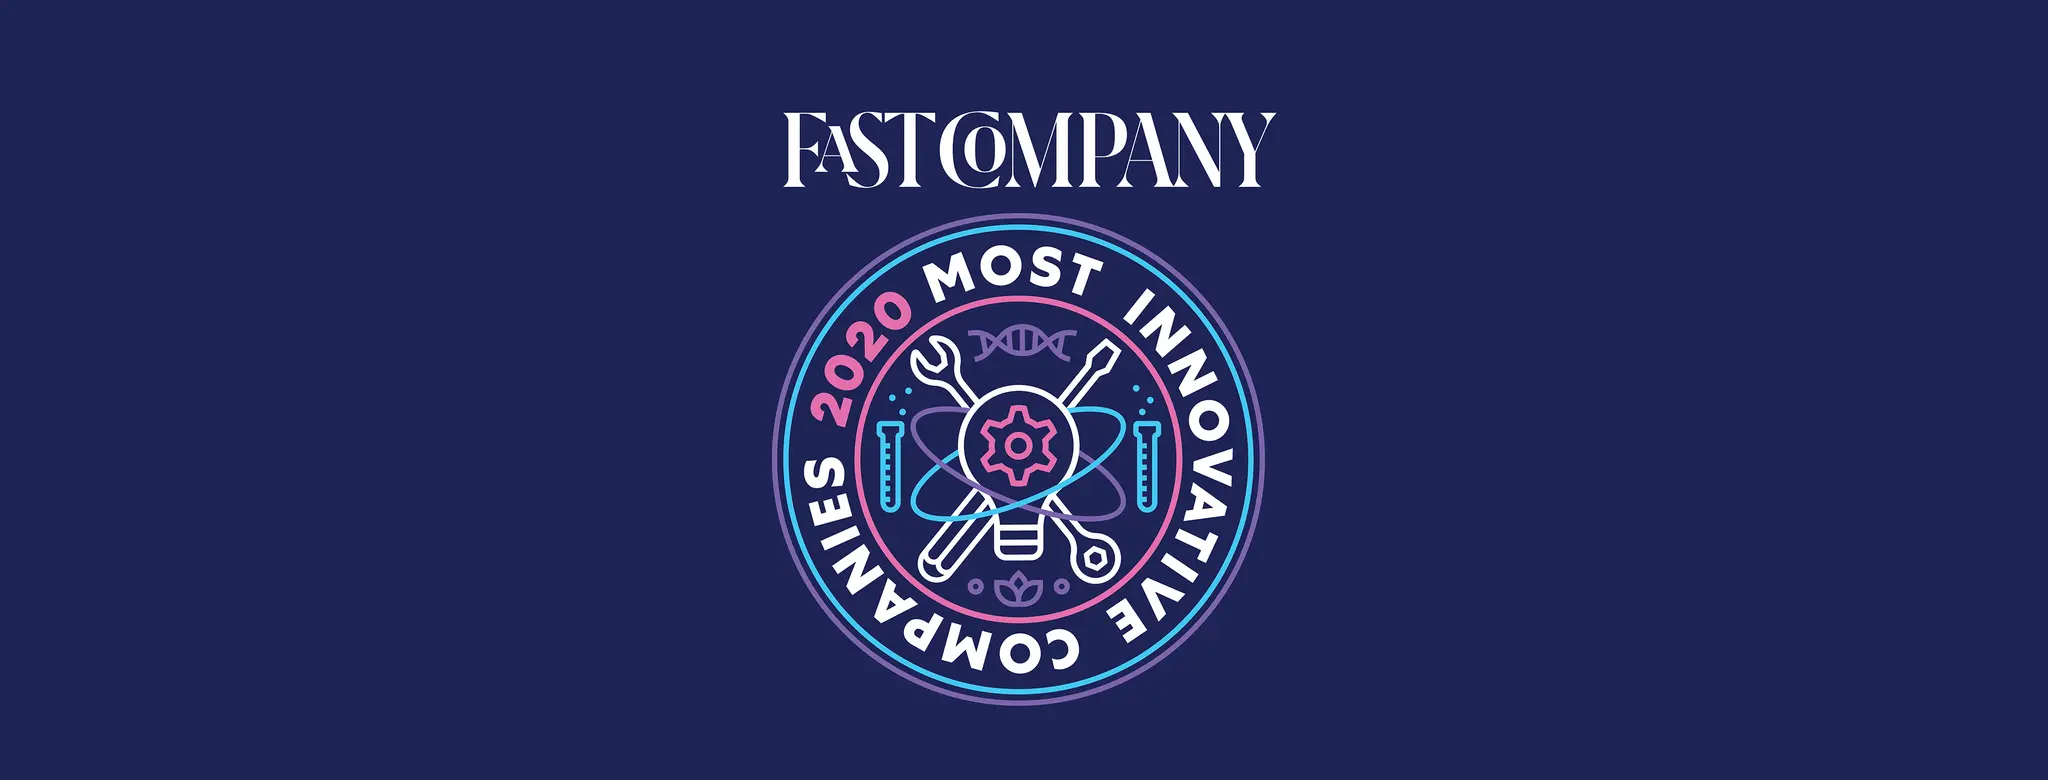 fast company most innovative company logo